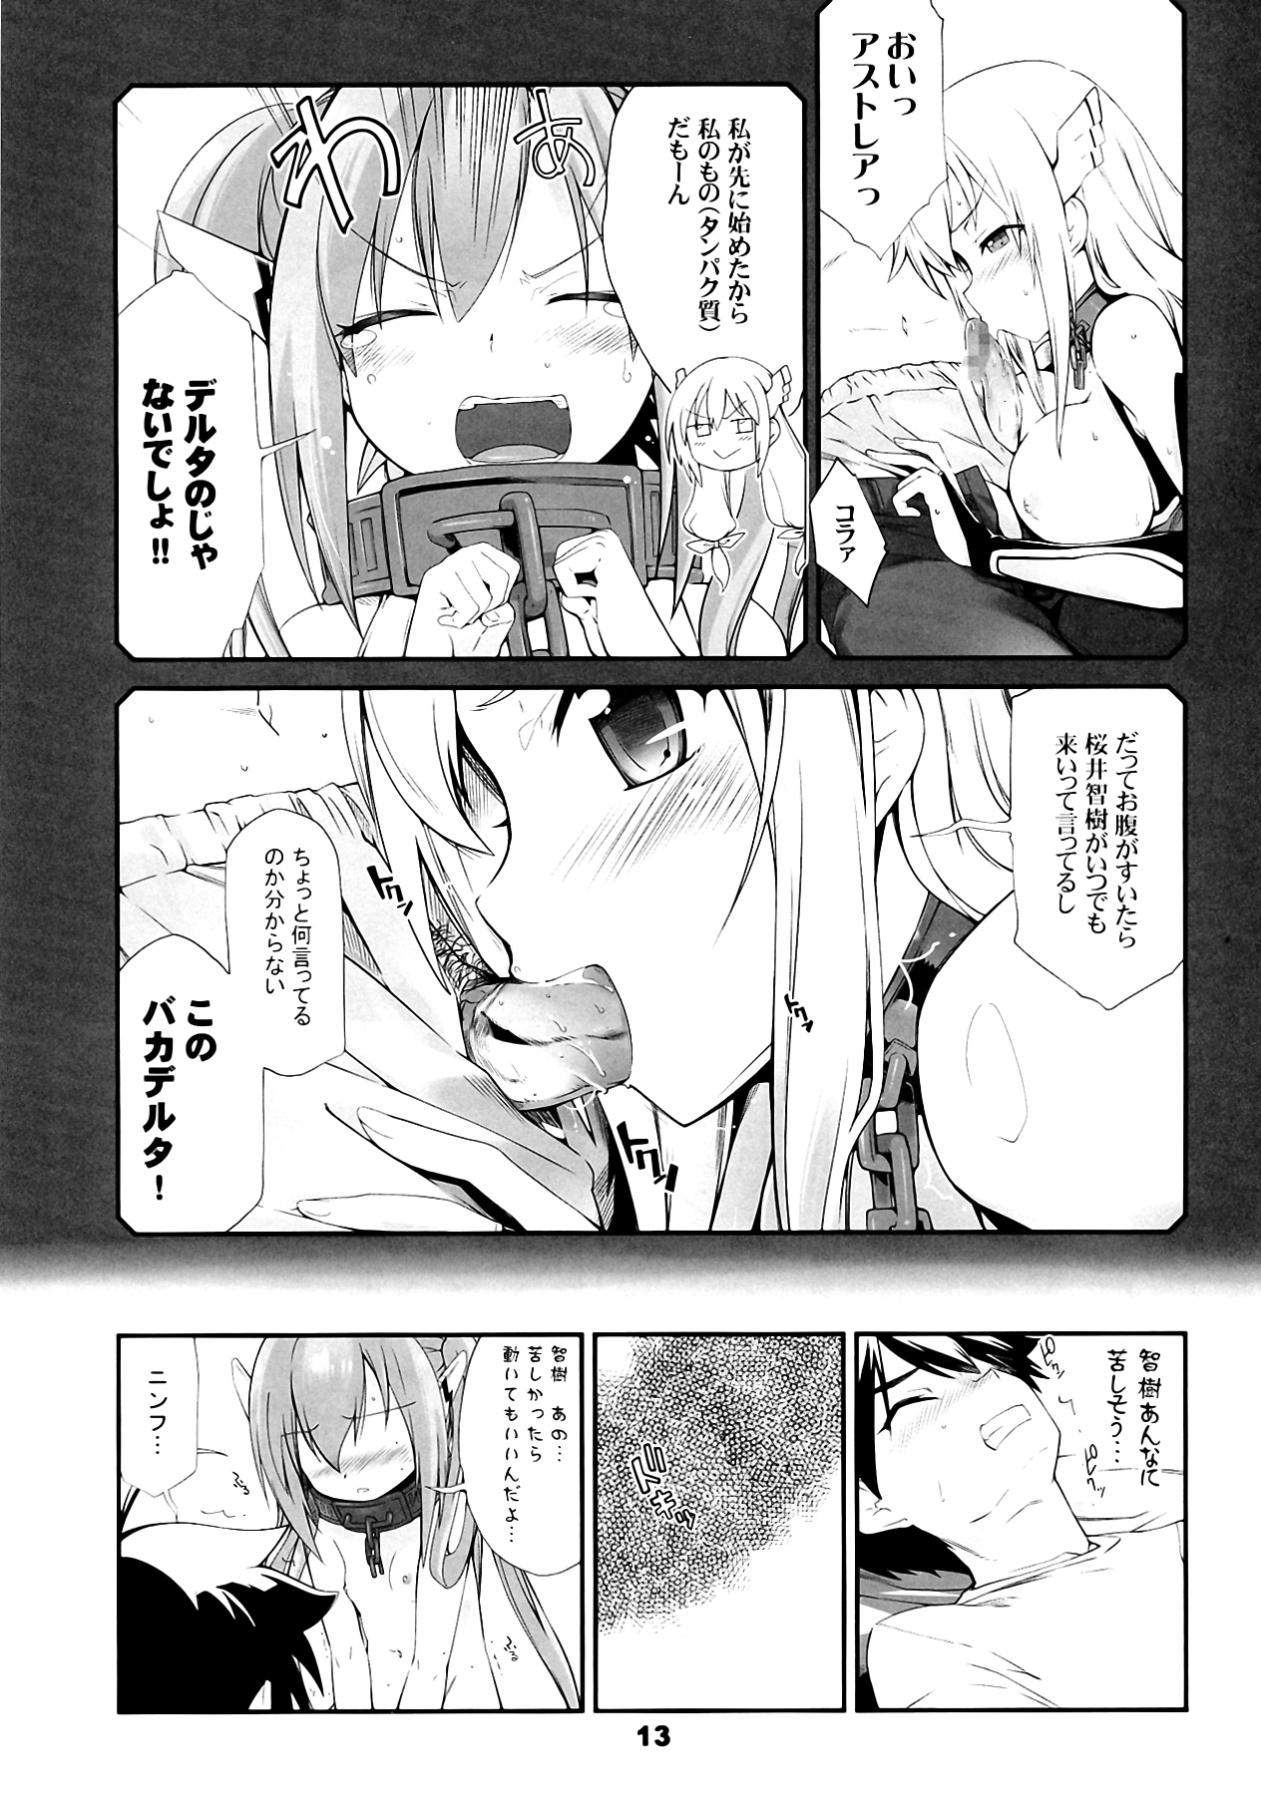 Cocks Angeloid Maji Tenshi - Sora no otoshimono Amigo - Page 13